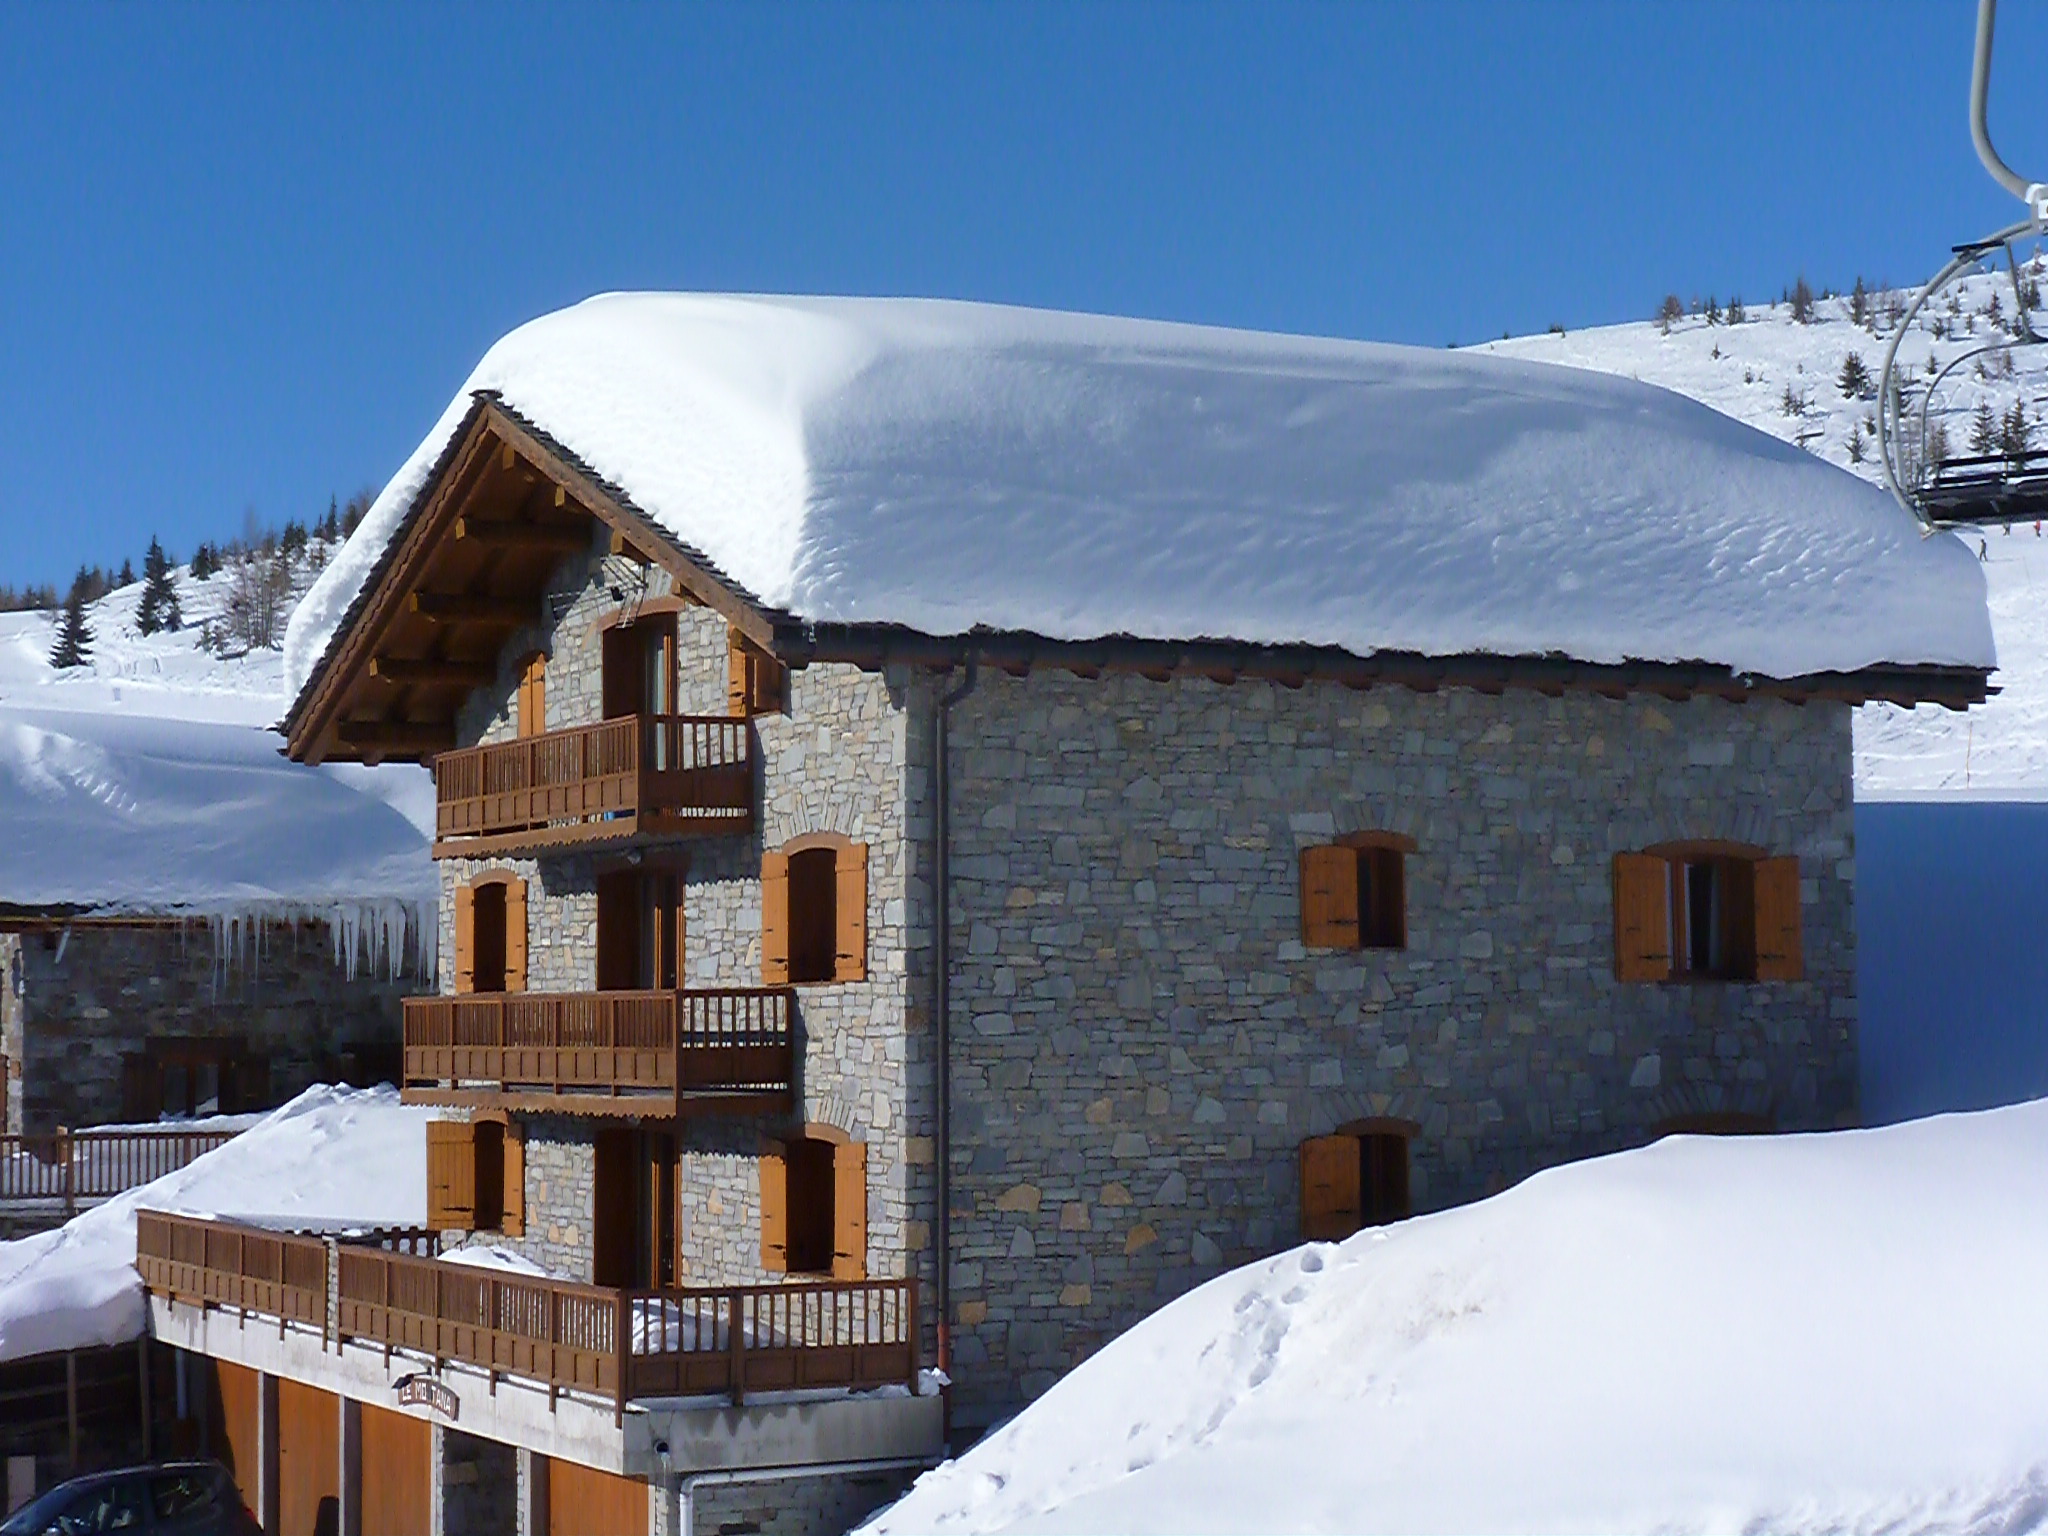 Location de vos vacances dans un chalet dans les Alpes. La Rosière station de ski familiale est située en Tarentaise